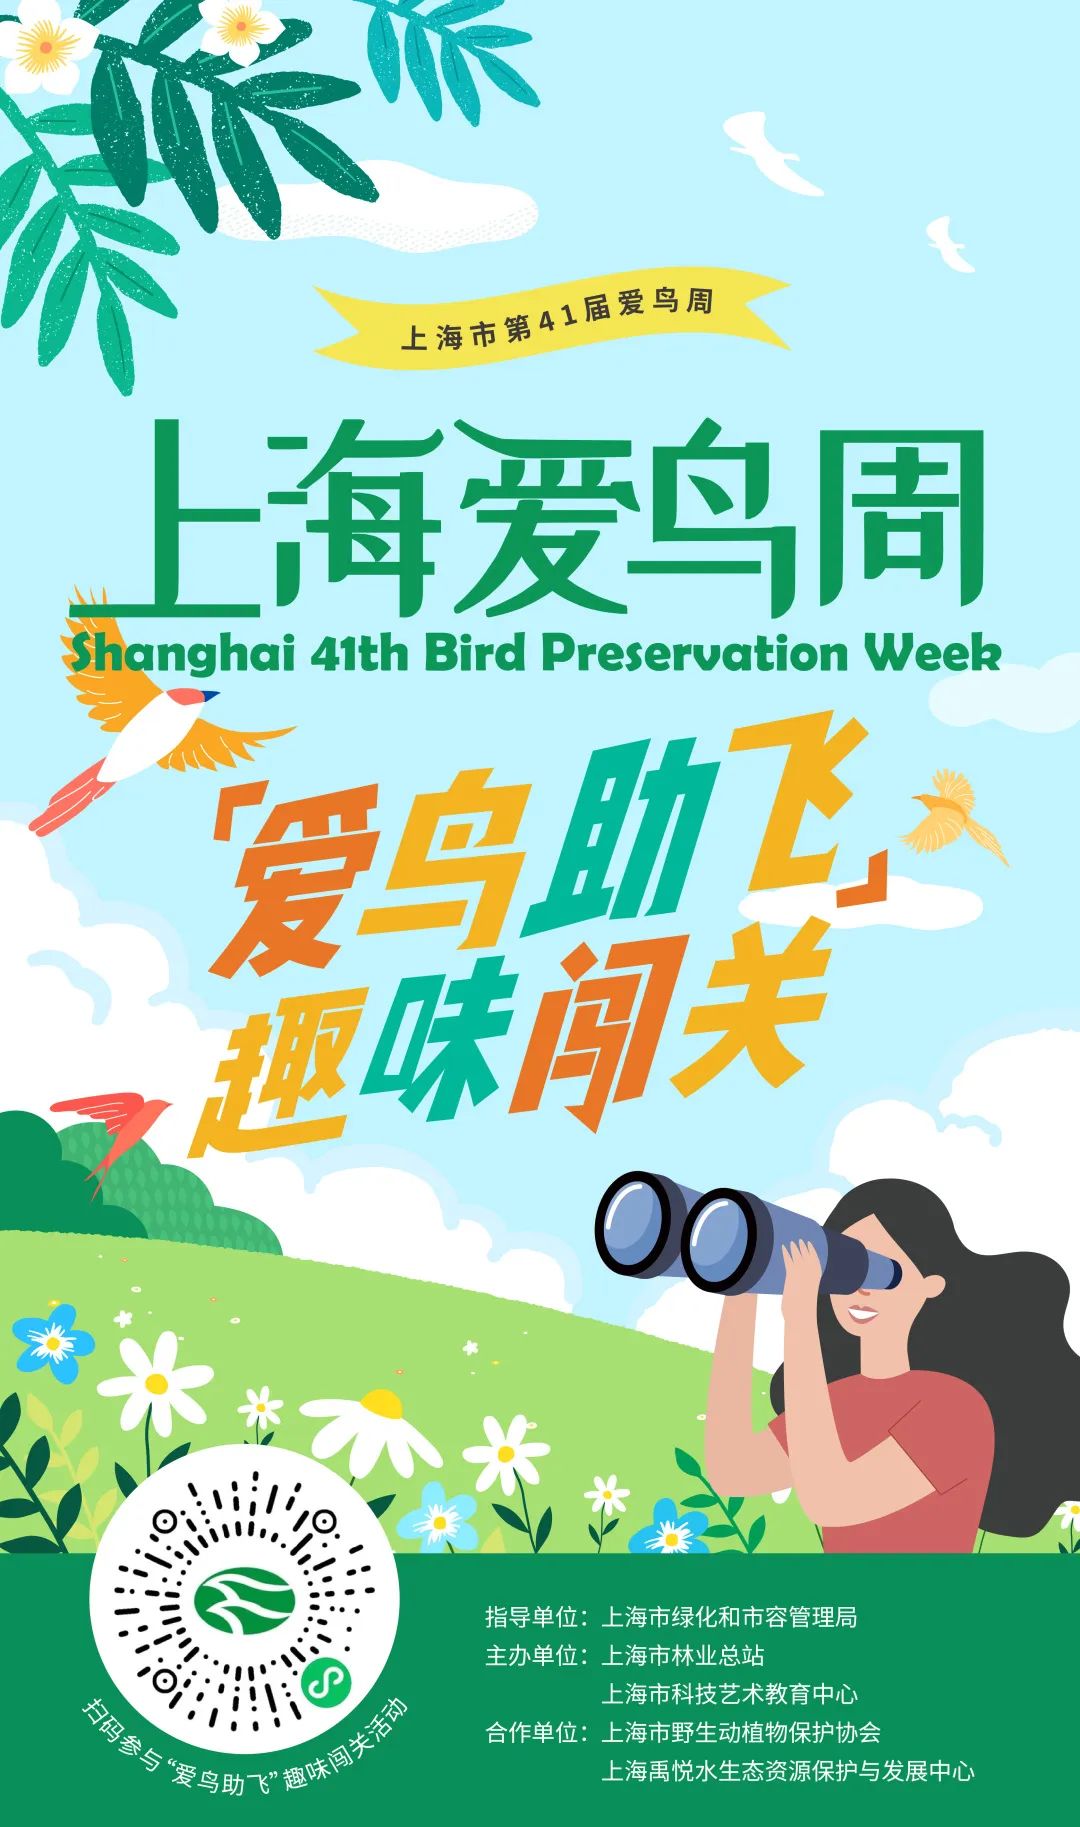 山东 青岛：城阳区爱鸟周启动 发动全社会爱鸟护绿-中国野生植物保护协会